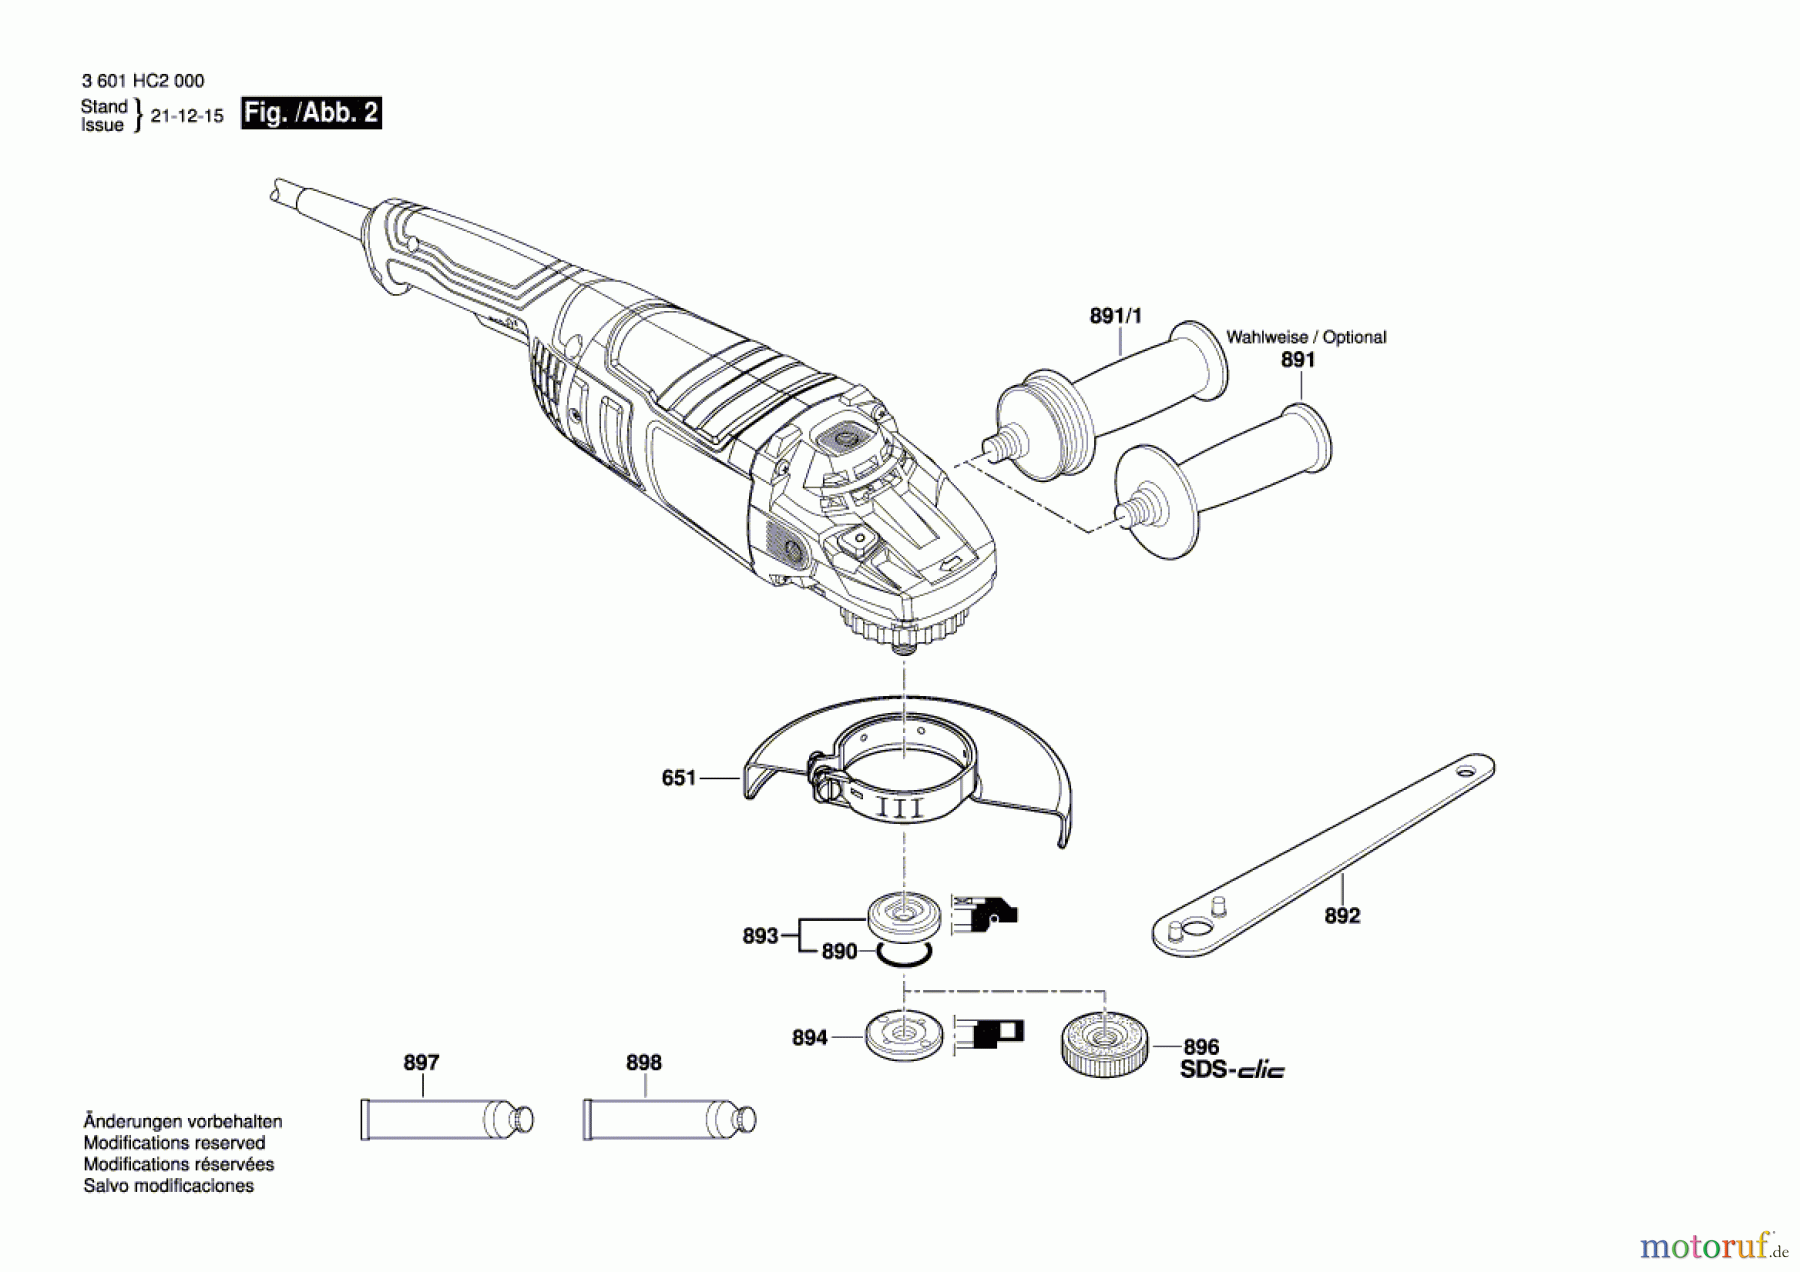  Bosch Werkzeug Winkelschleifer GWS 24-180P Seite 2